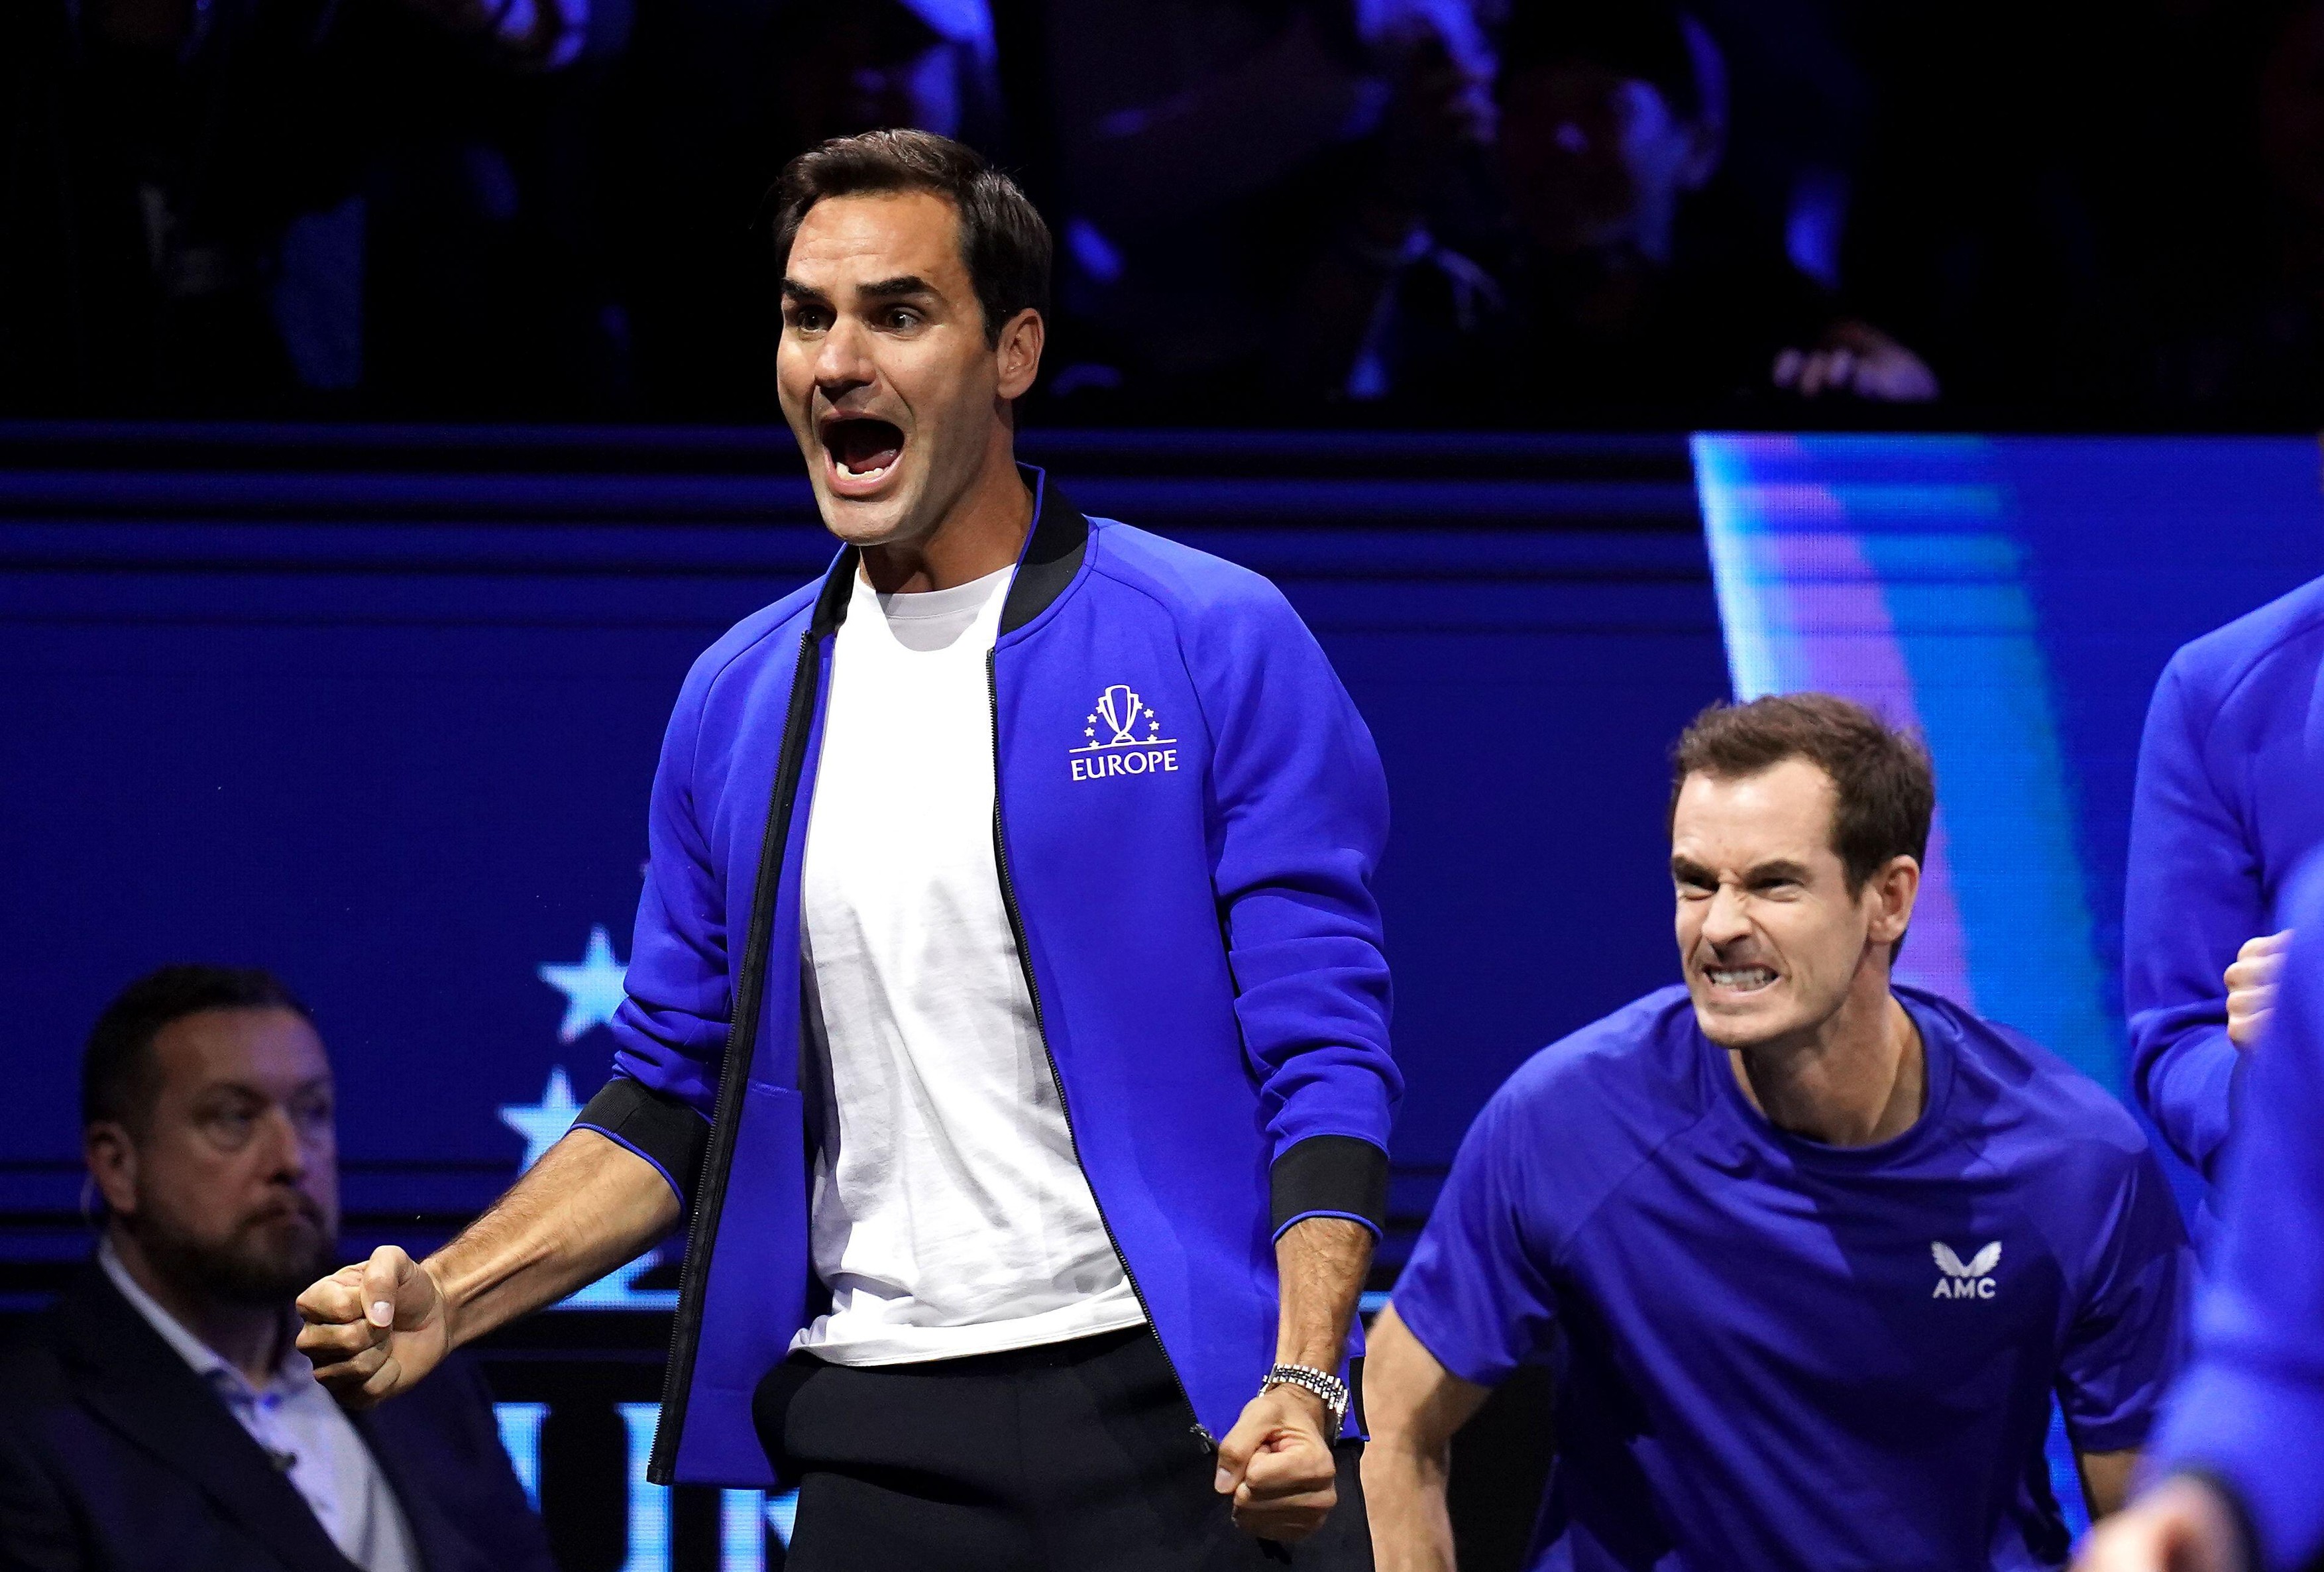 Roger Federer a fost întrebat pe cine consideră urmașul său în circuitul ATP. Elvețianul a răspuns fara ezitare